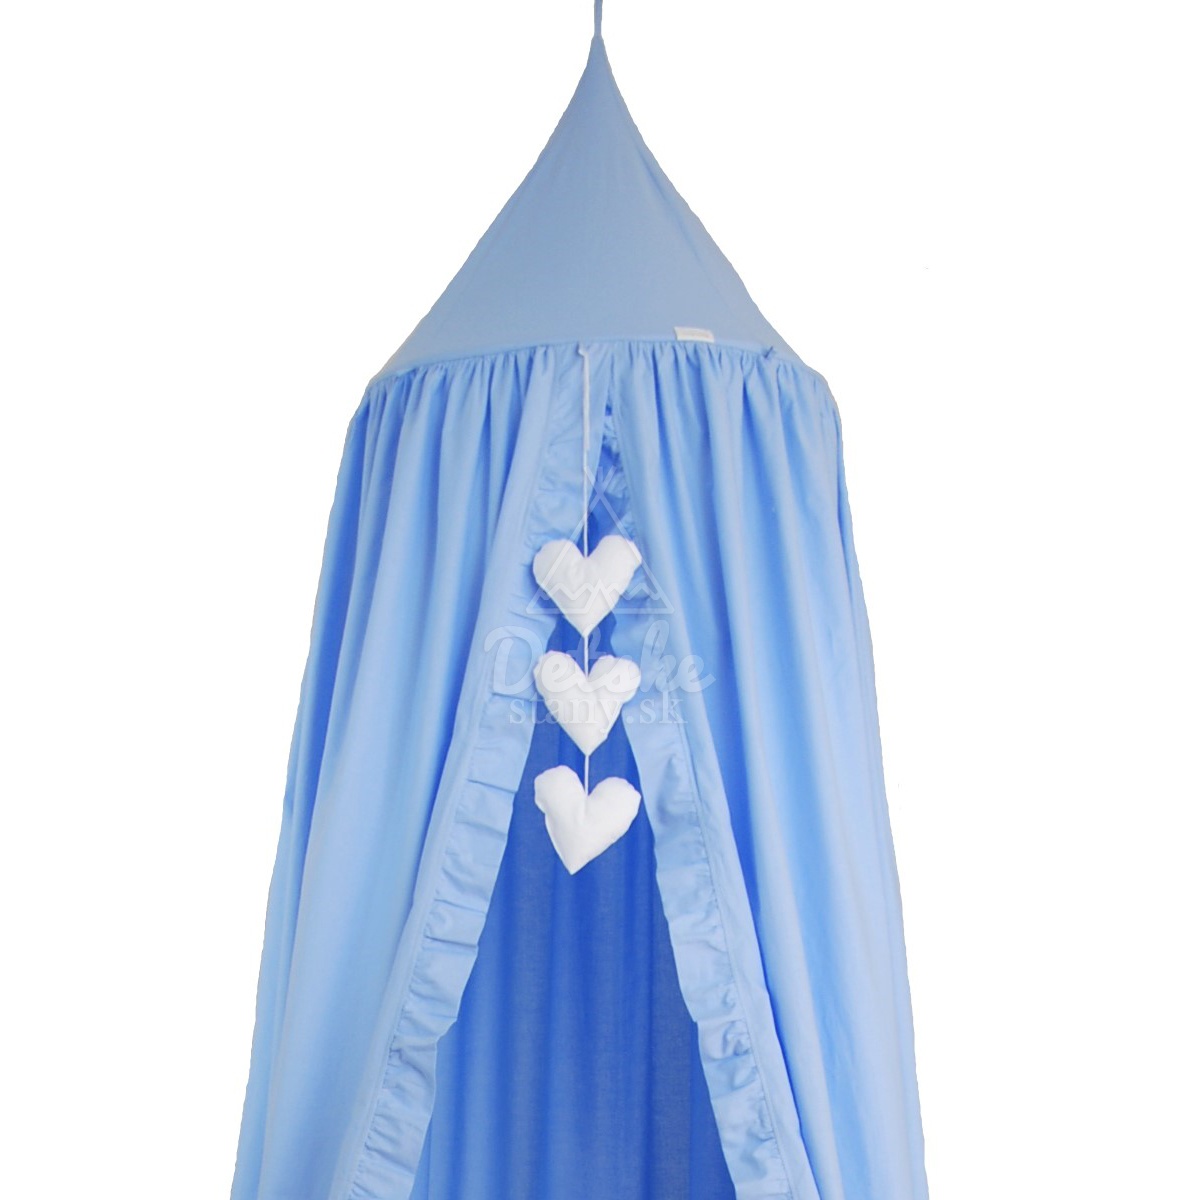 Bavlnený baldachýn s volánmi / závesný stan - modrý - PREMIUM SET